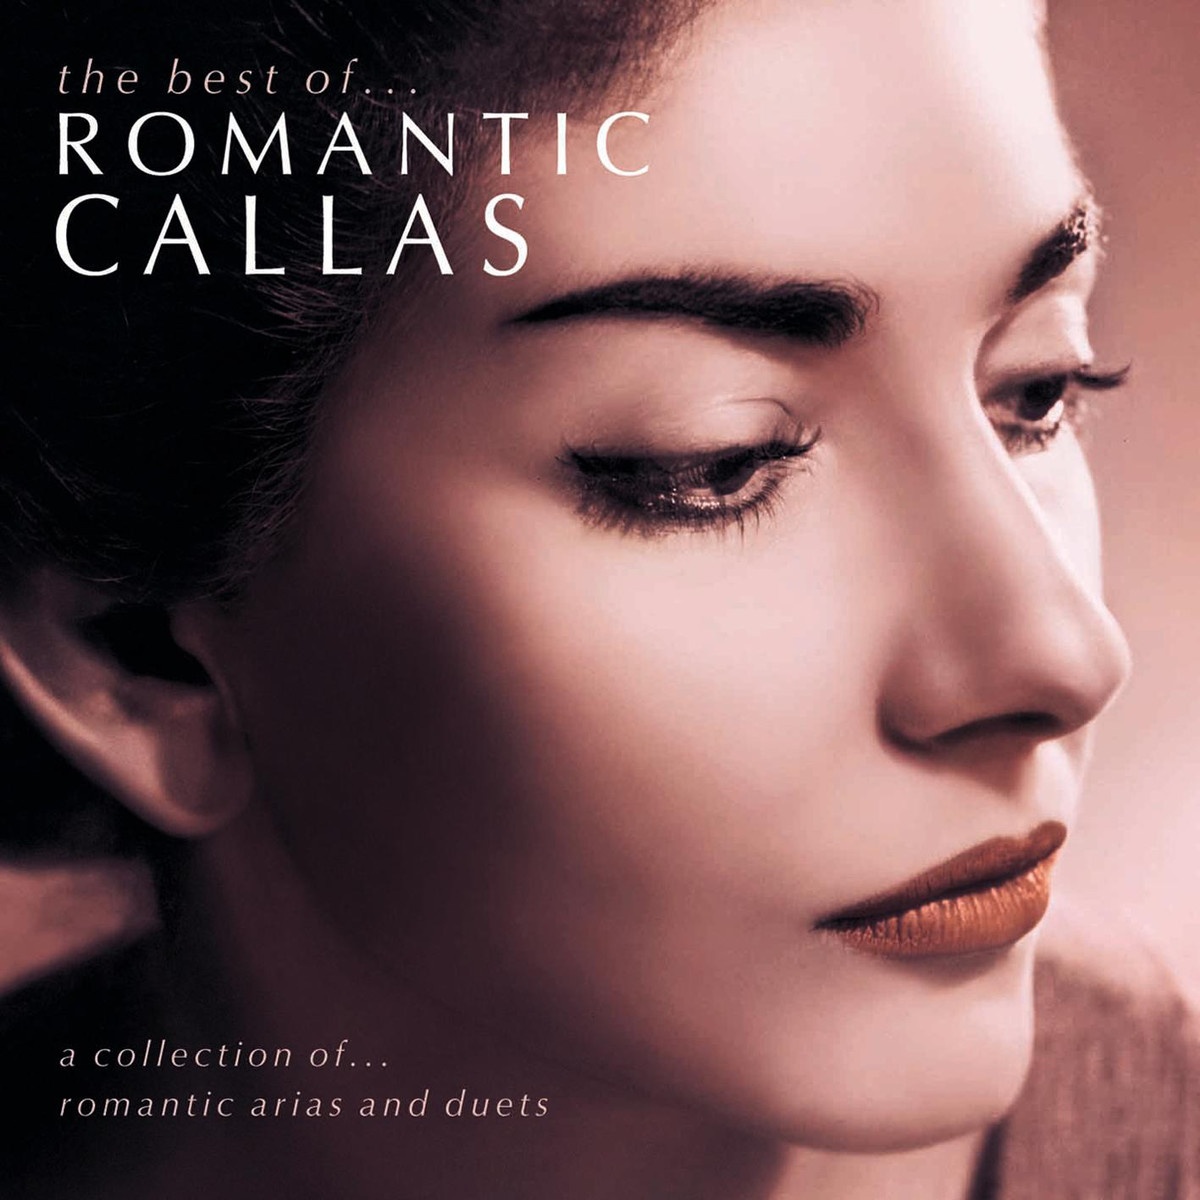 The Best Of Romantic Callas